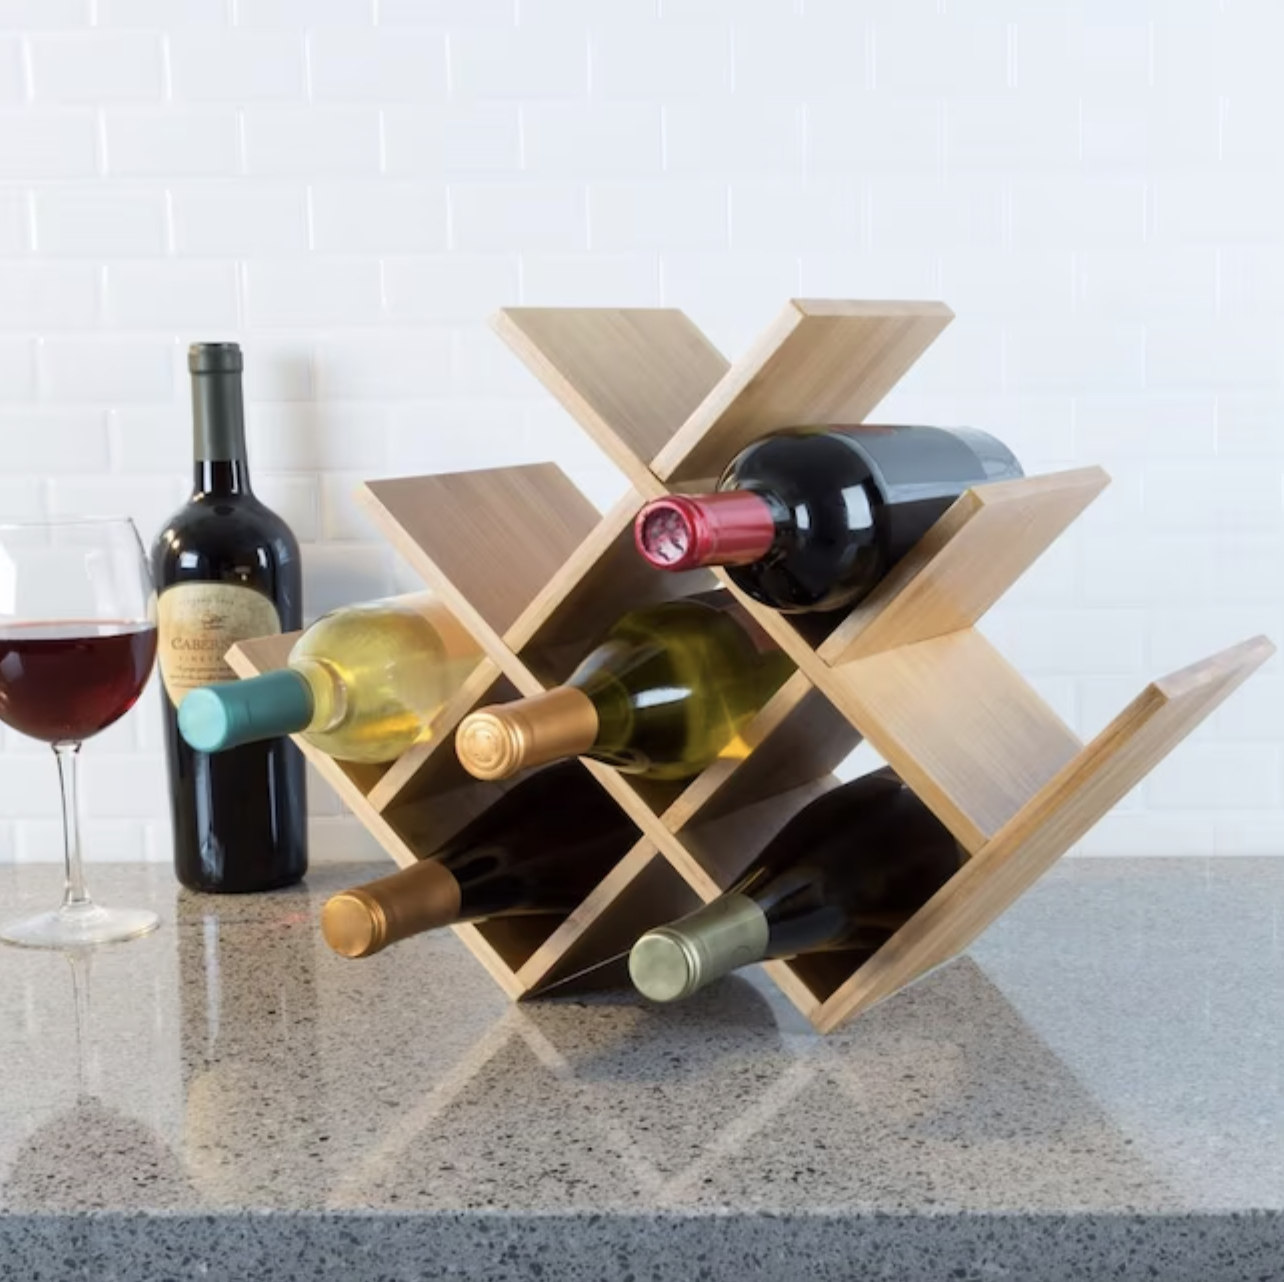 rack holding wine bottles